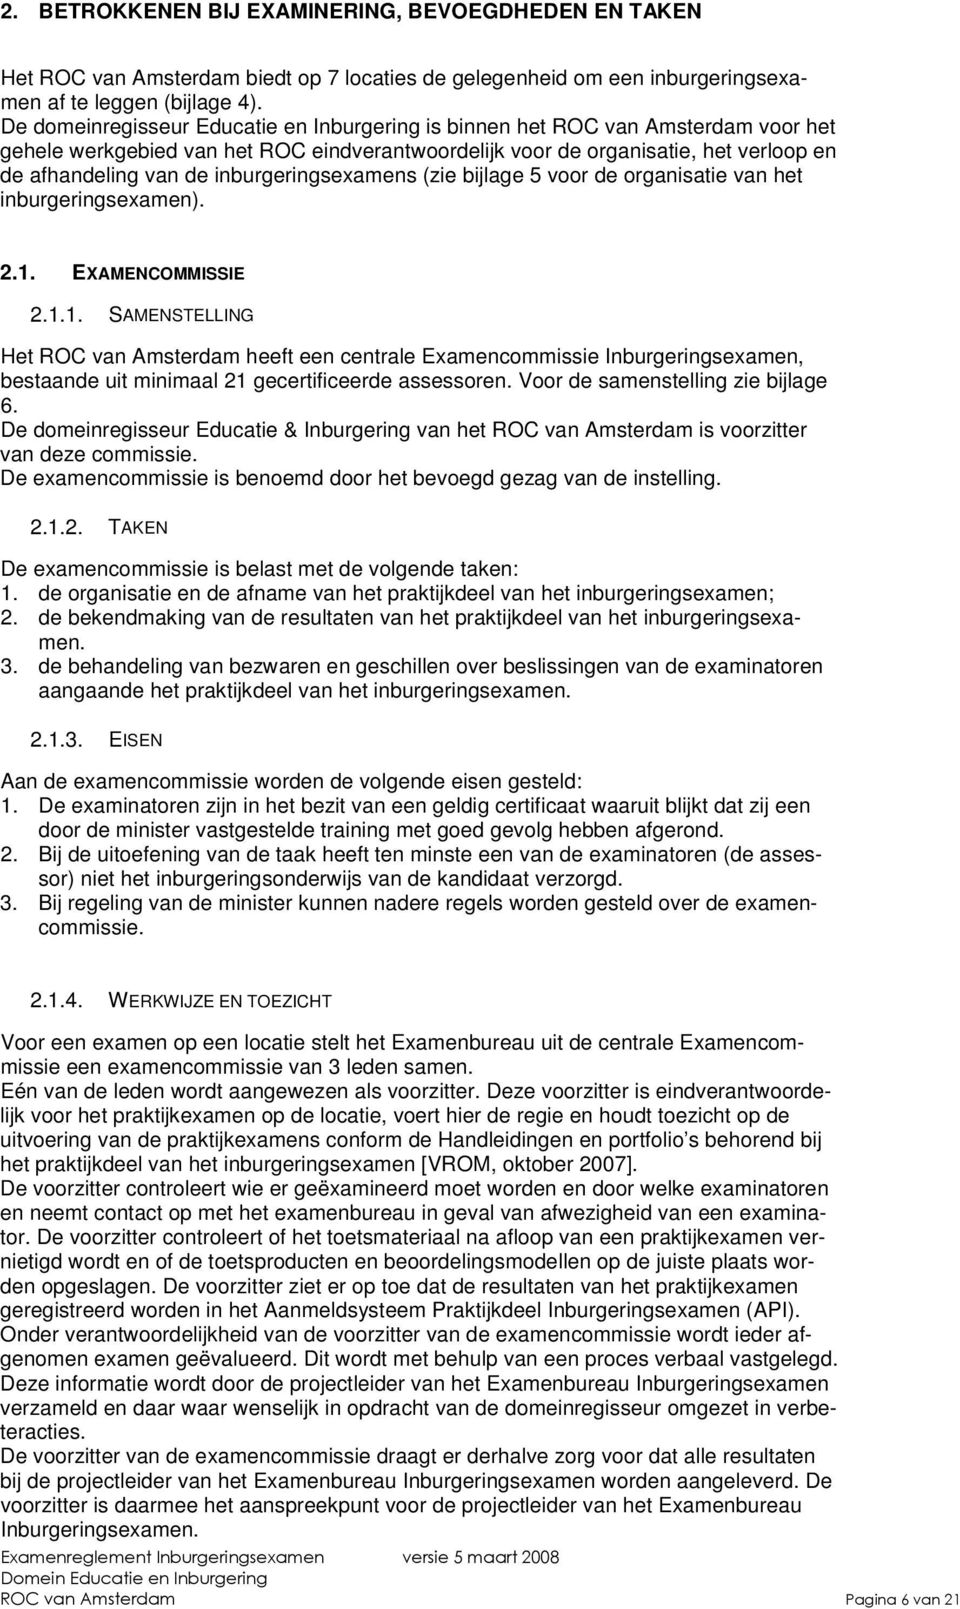 inburgeringsexamens (zie bijlage 5 voor de organisatie van het inburgeringsexamen). 2.1.